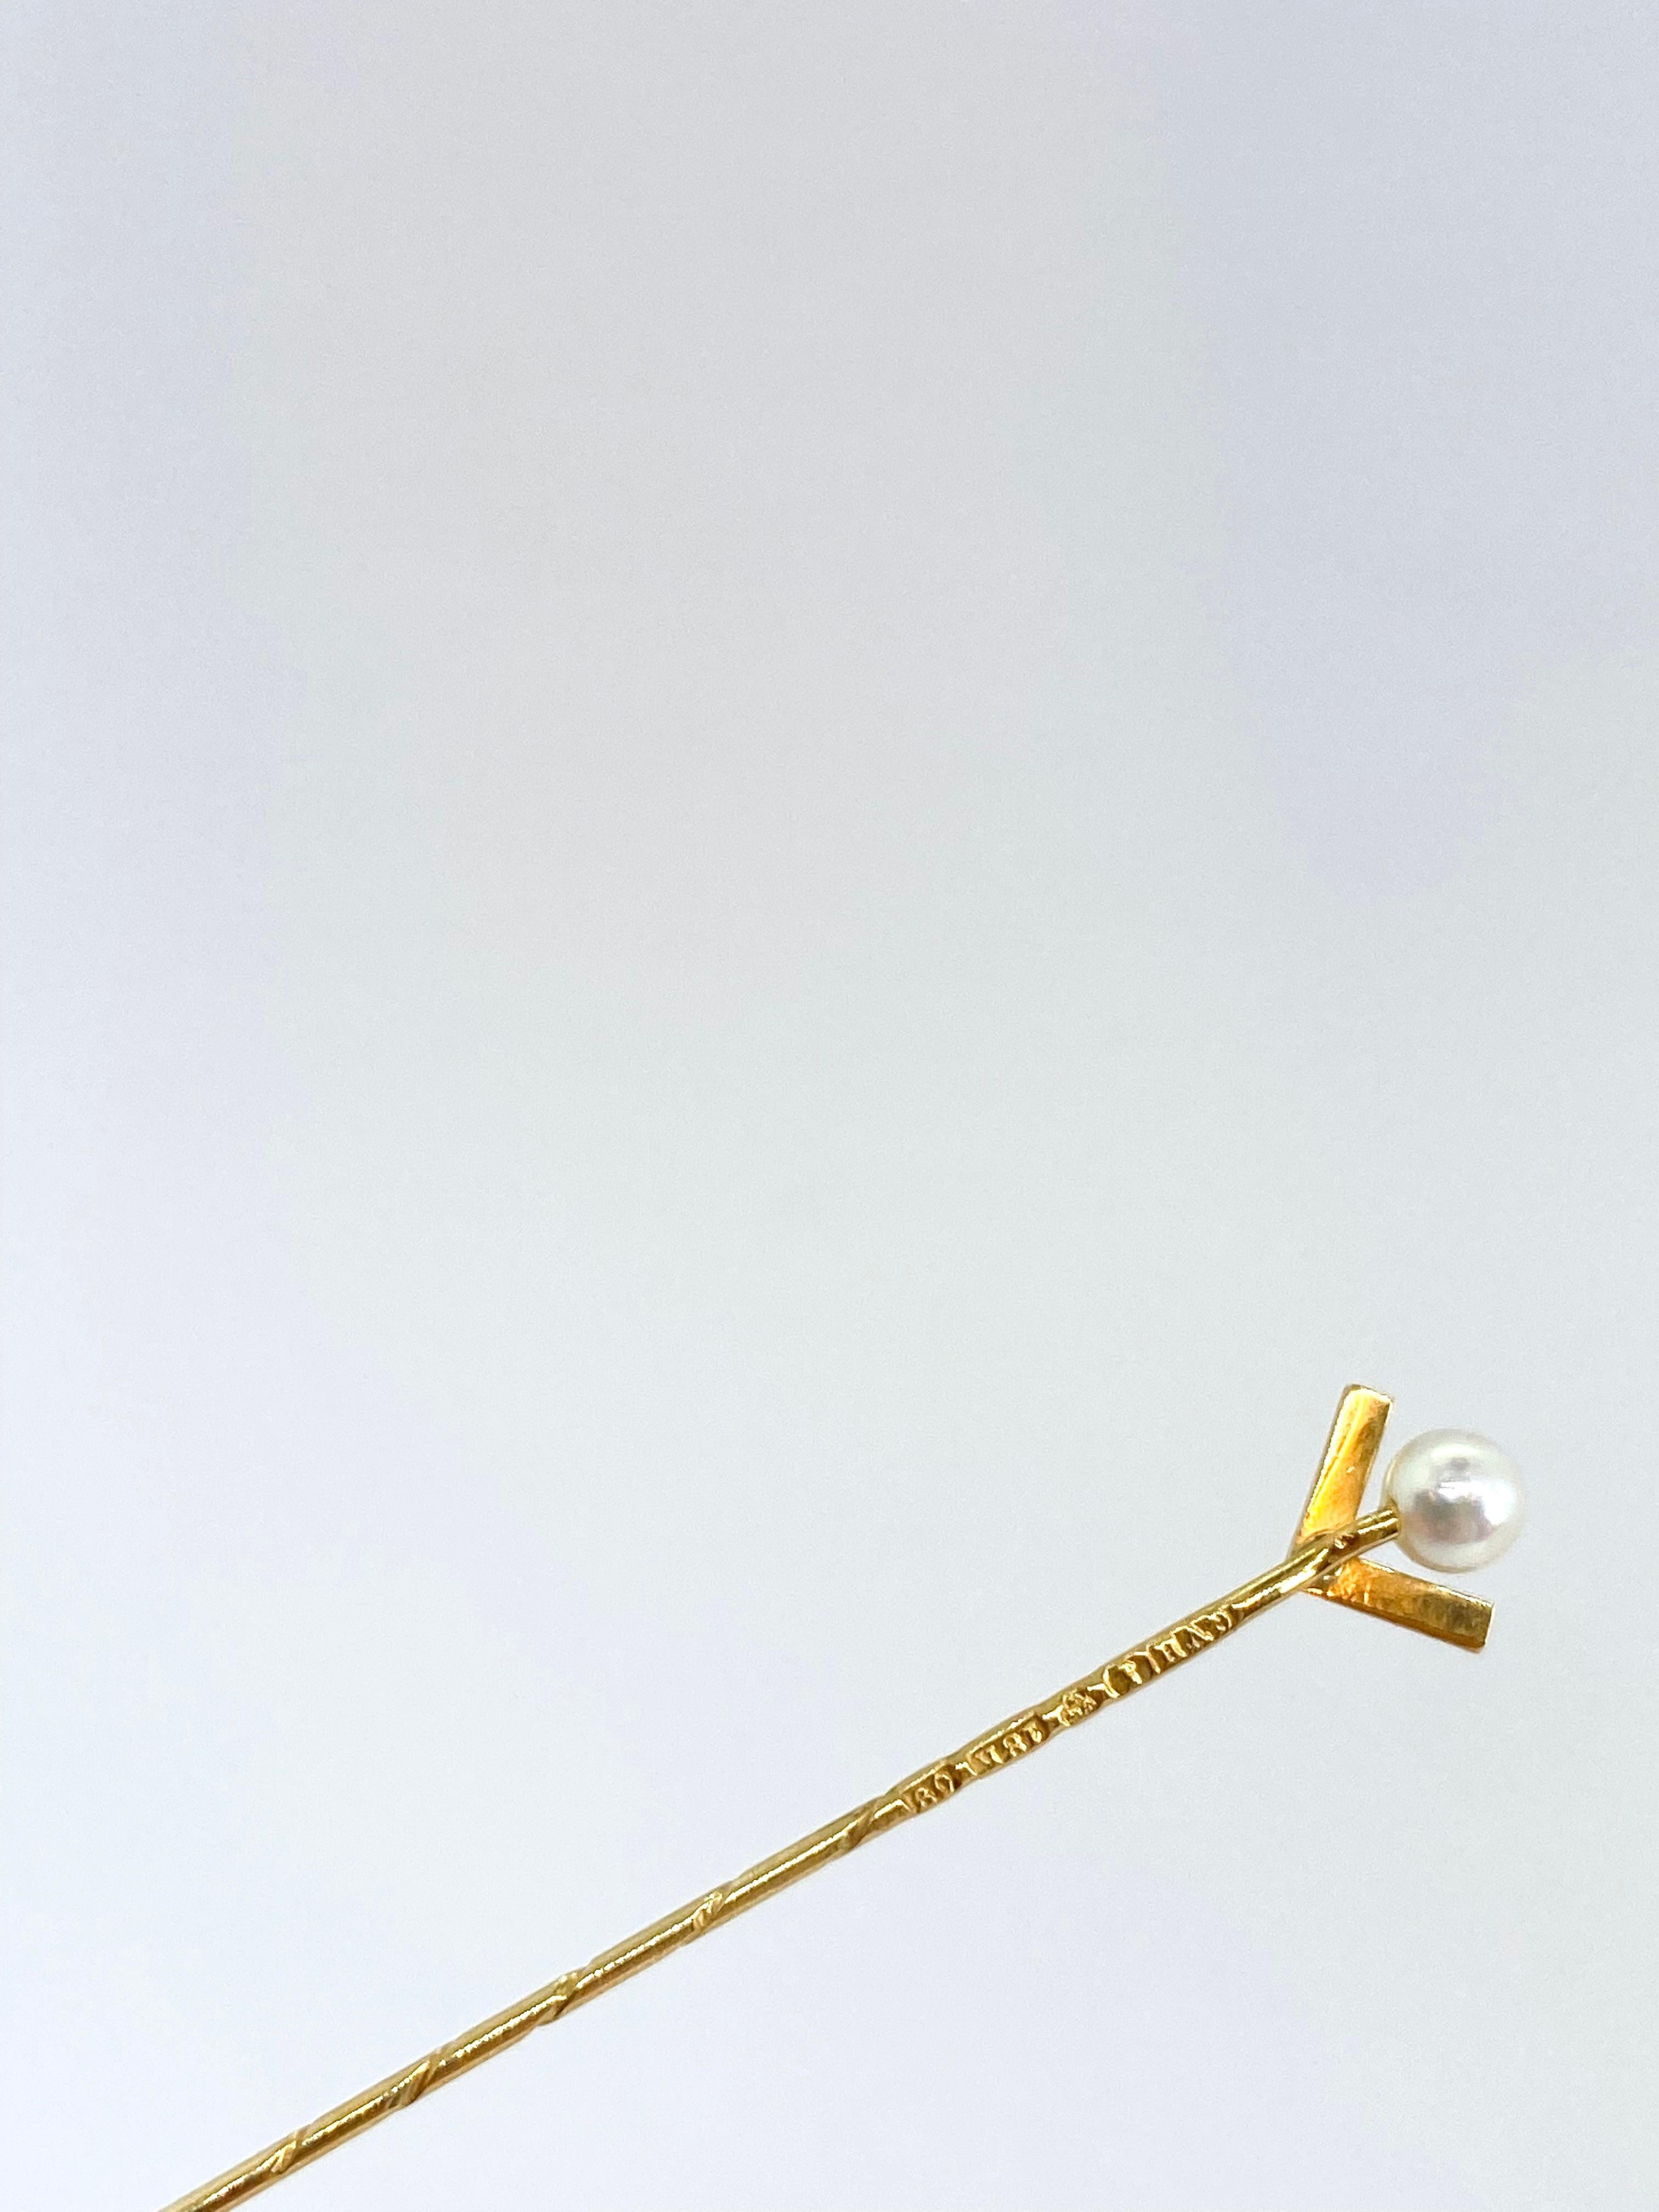 Epingle à nourrice en or 18 carats et perle
Fabriqué en Suède.
Timbre GVH, O9, 18K, Trois Couronnes